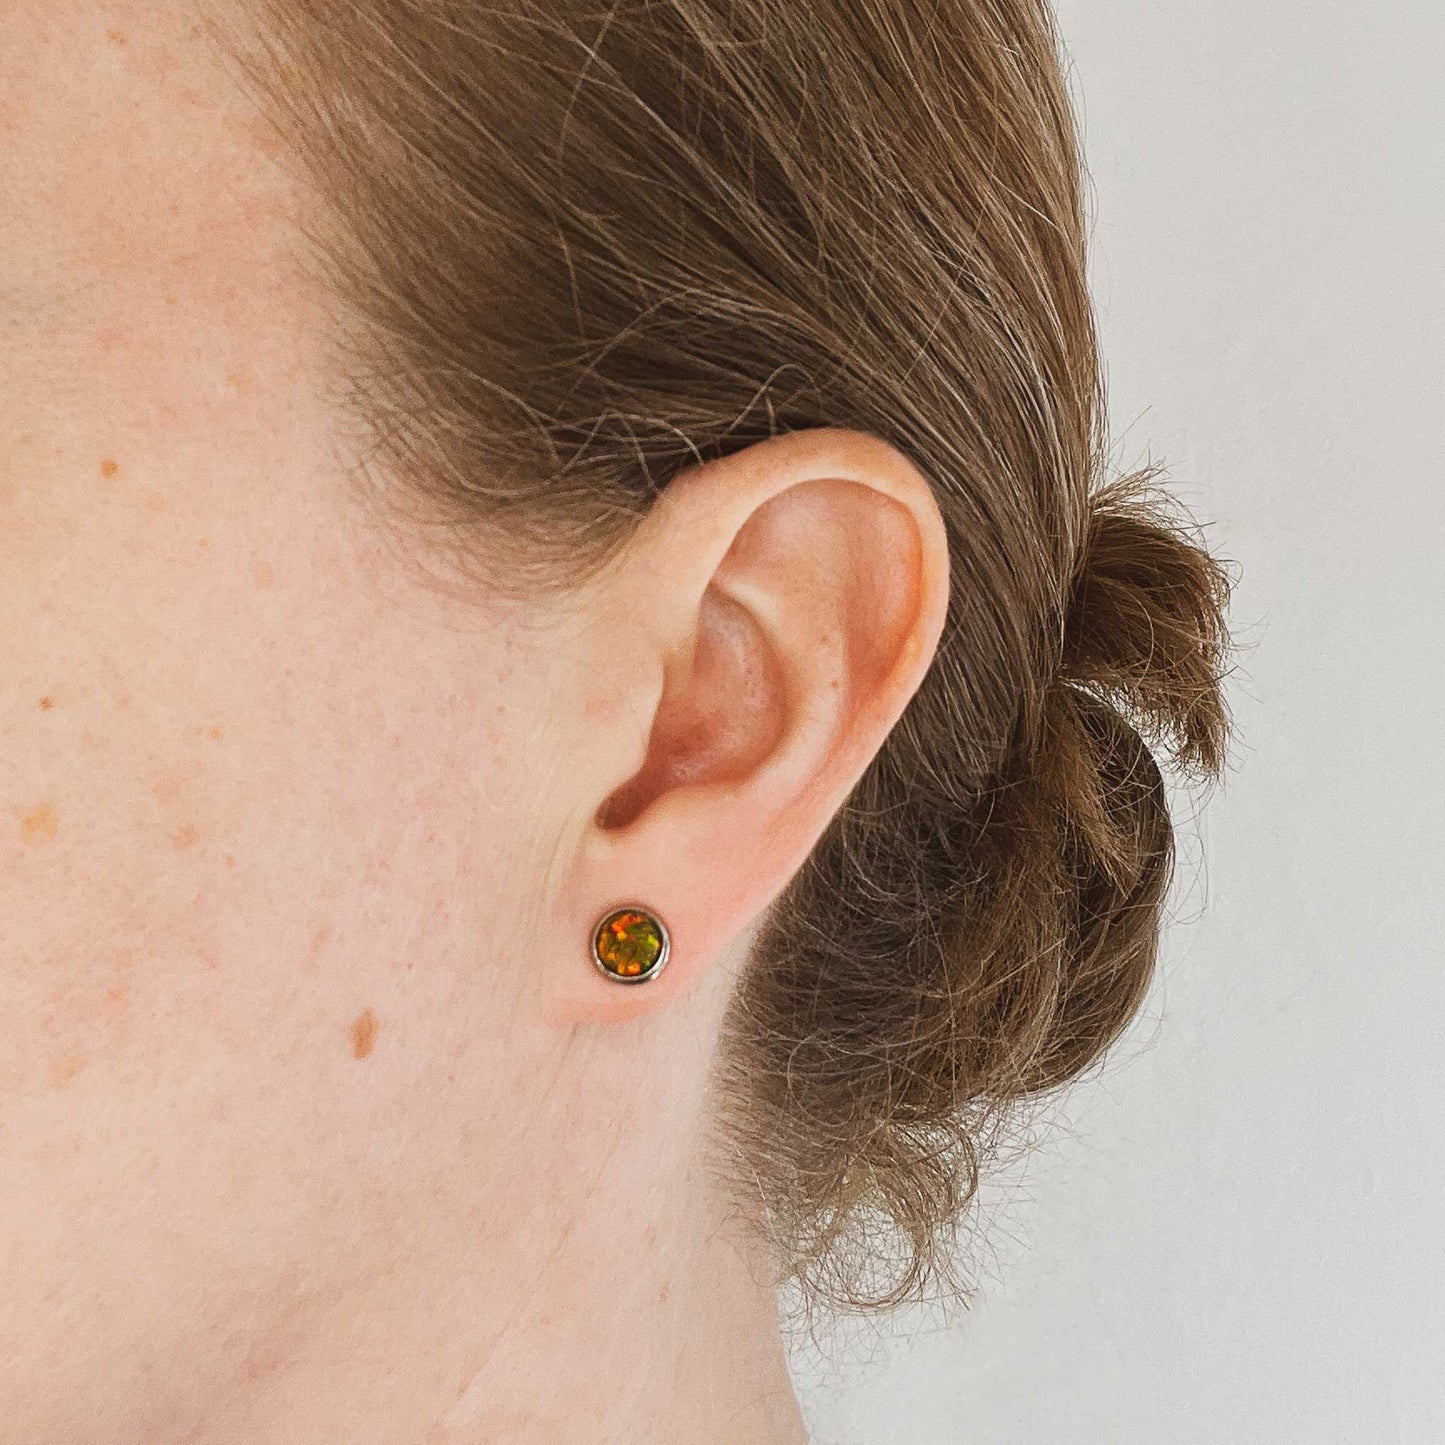 Woman wearing dark green Opal stud earring in earlobe